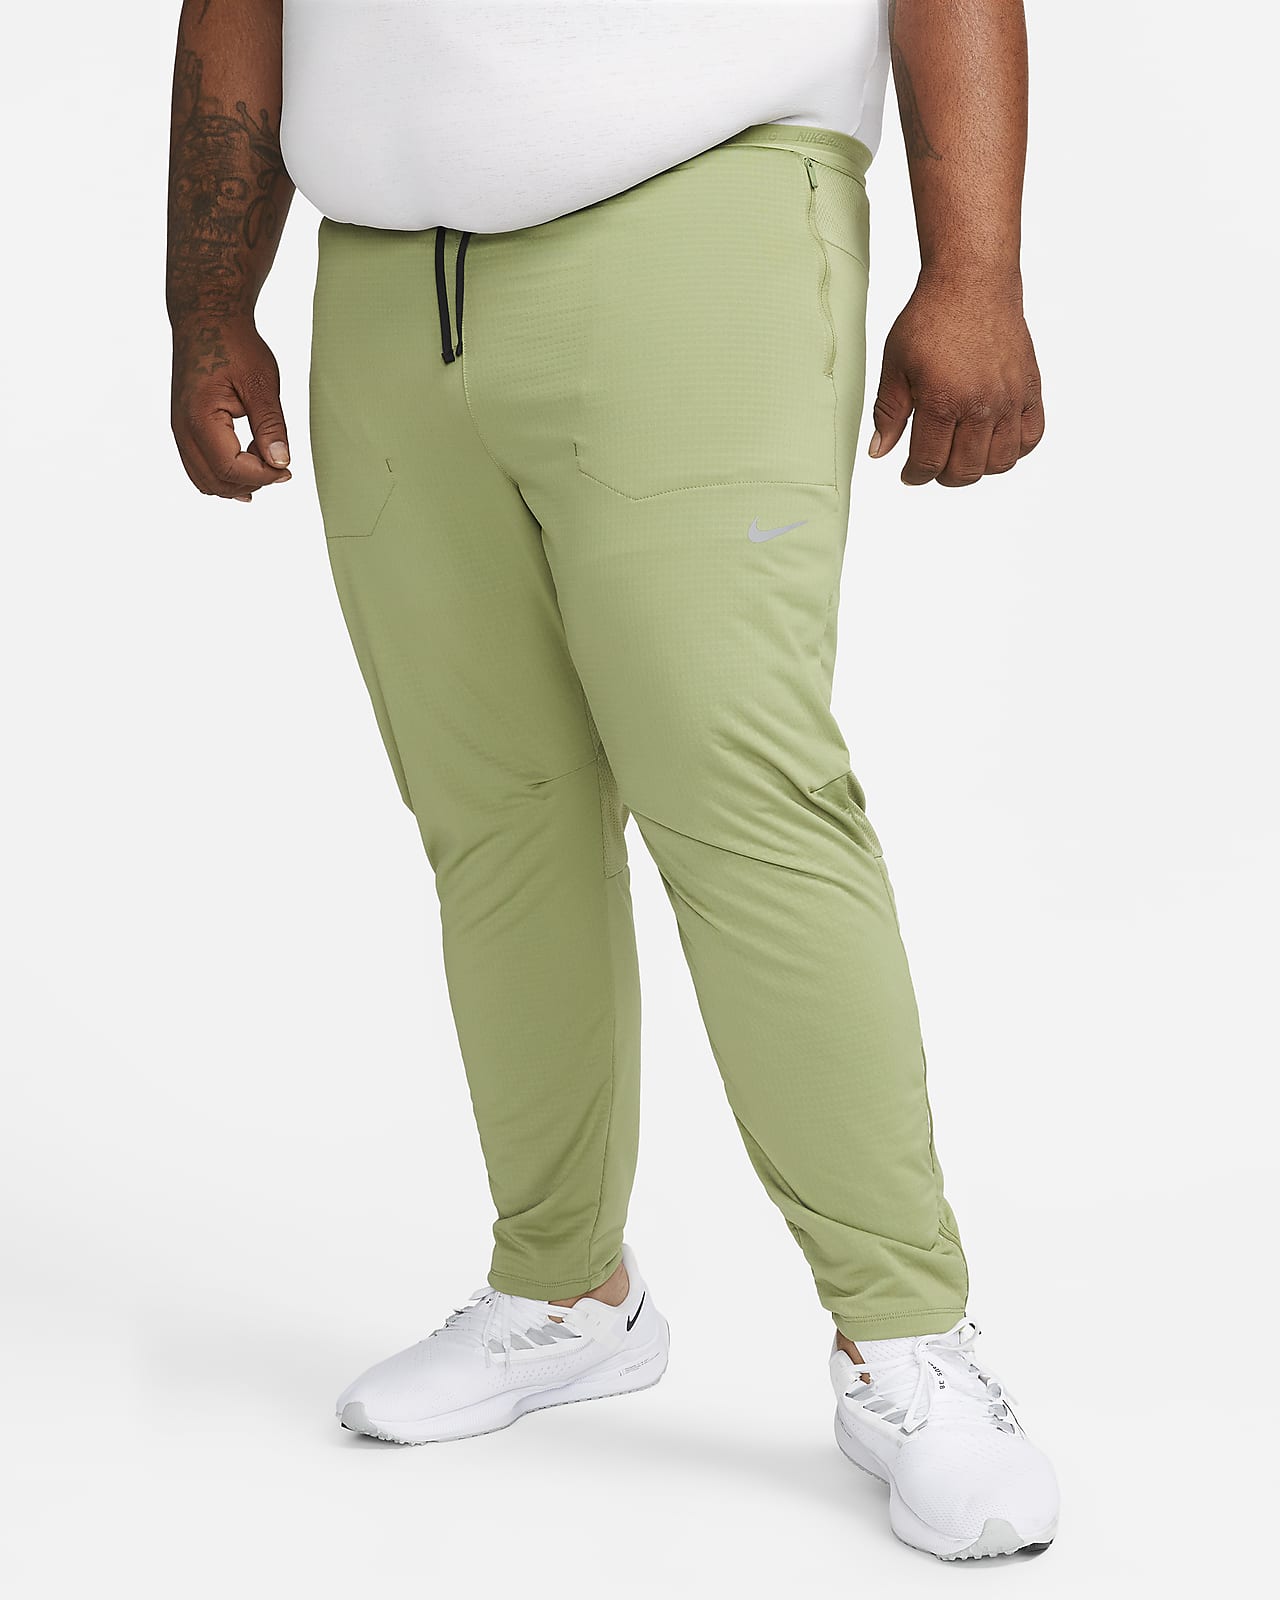 Nike Phenom Elite Hybrid Knit Running Pants Men Size XL Grey